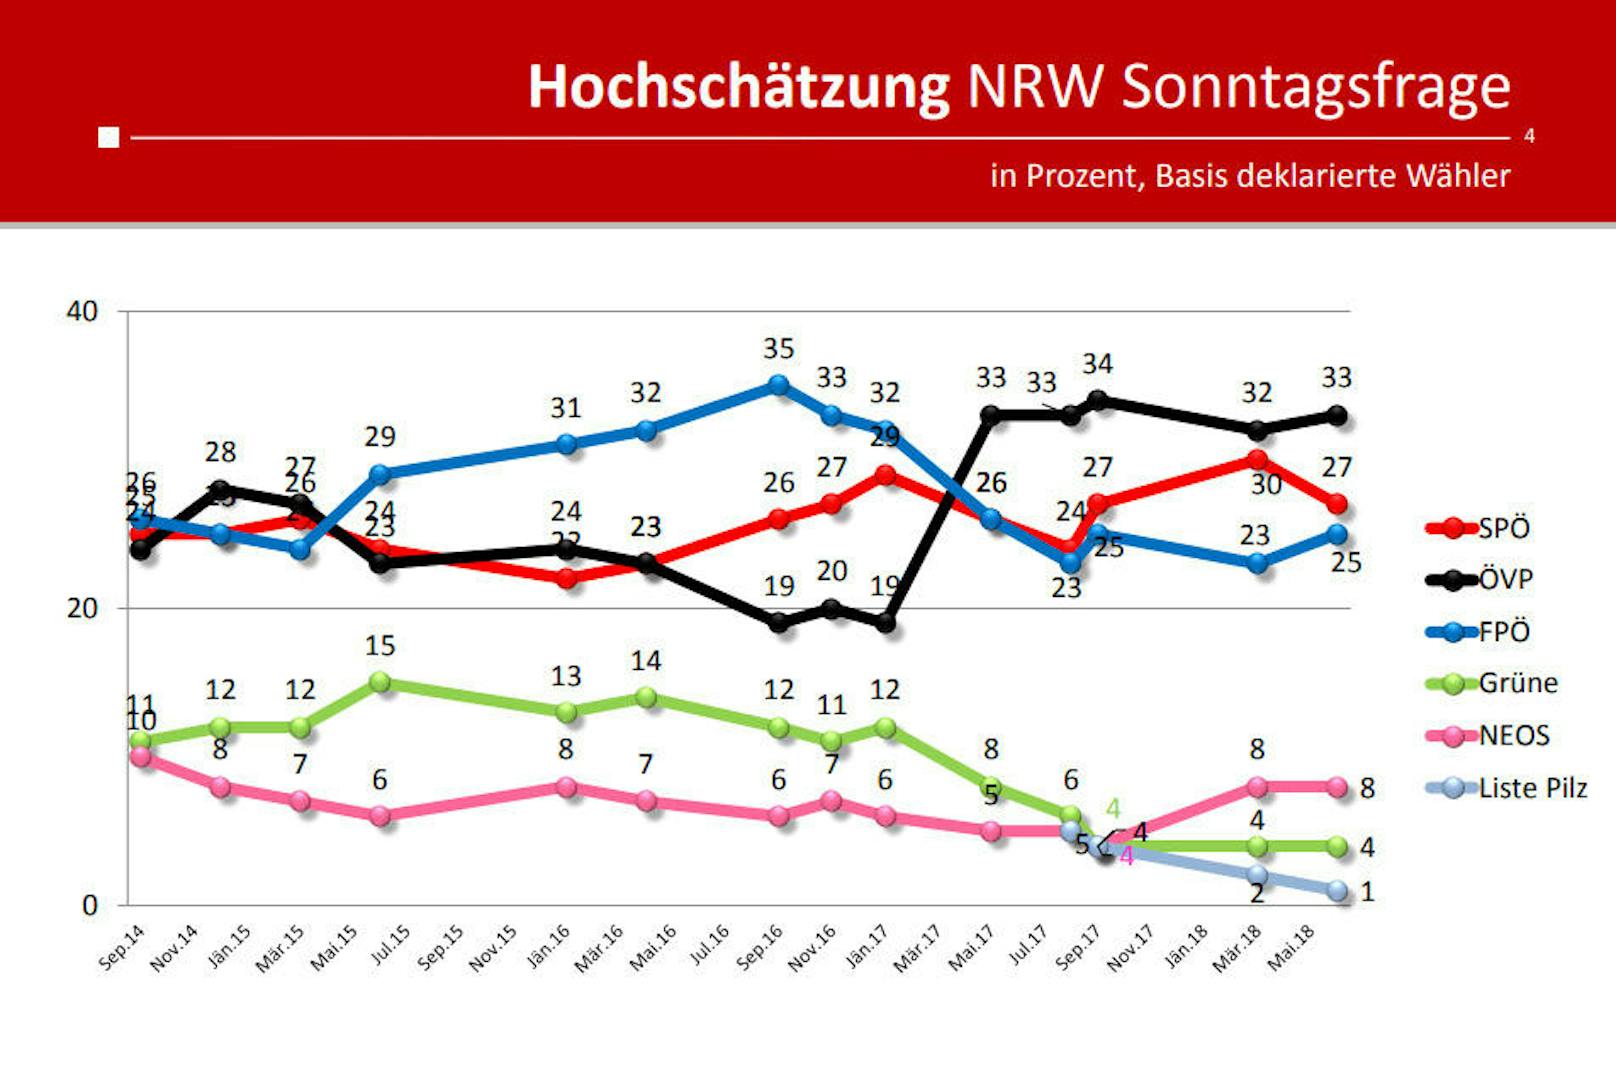 Wäre am Sonntag Nationalratswahl, wen würden Sie wählen? 33 Prozent würden ihre Stimme der ÖVP geben, 27 der SPÖ, 25 der FPÖ.